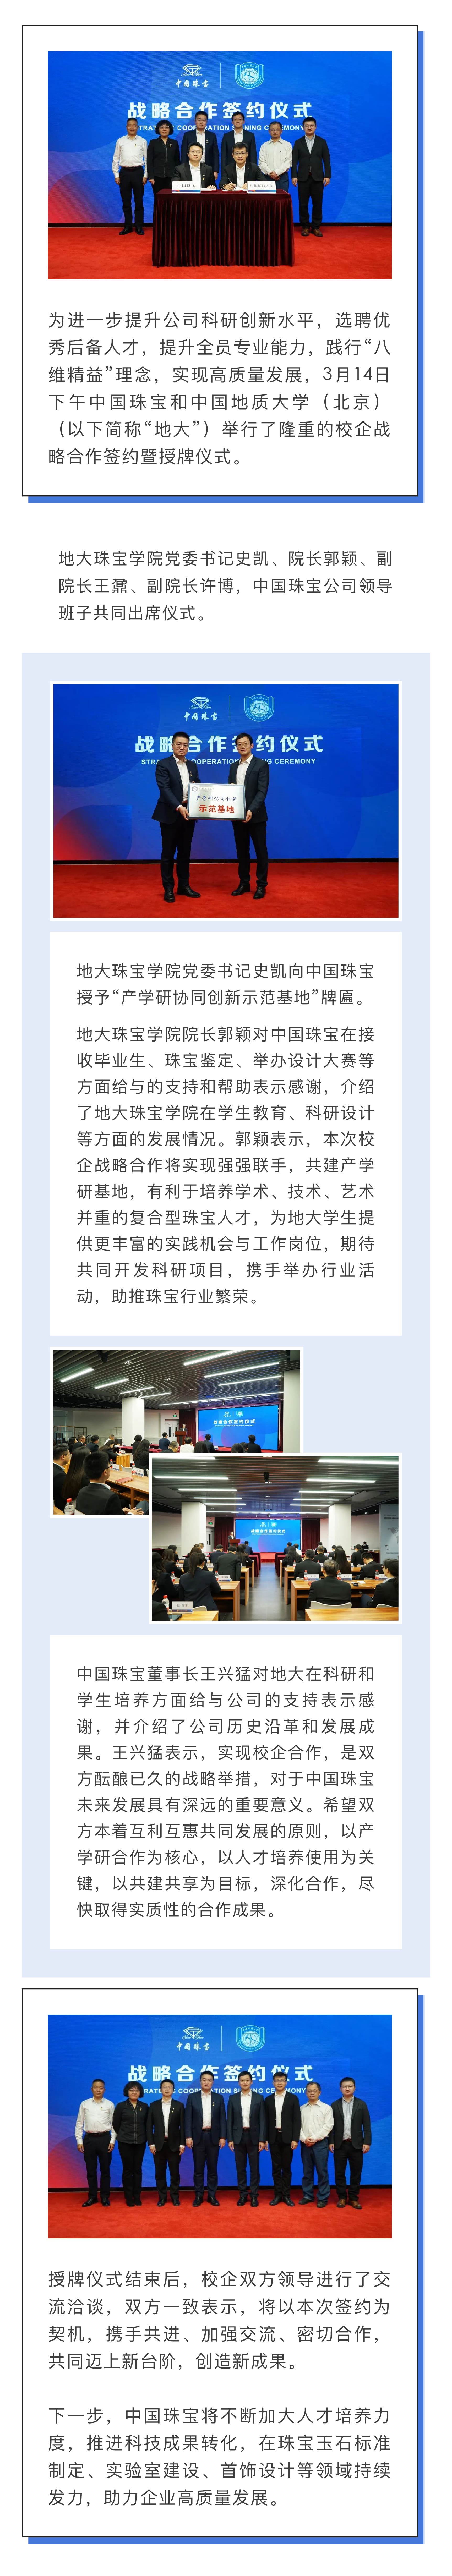 3-17 中国珠宝和中国地质大学（北京） 隆重举行校企战略合作签约暨授牌仪式.jpg